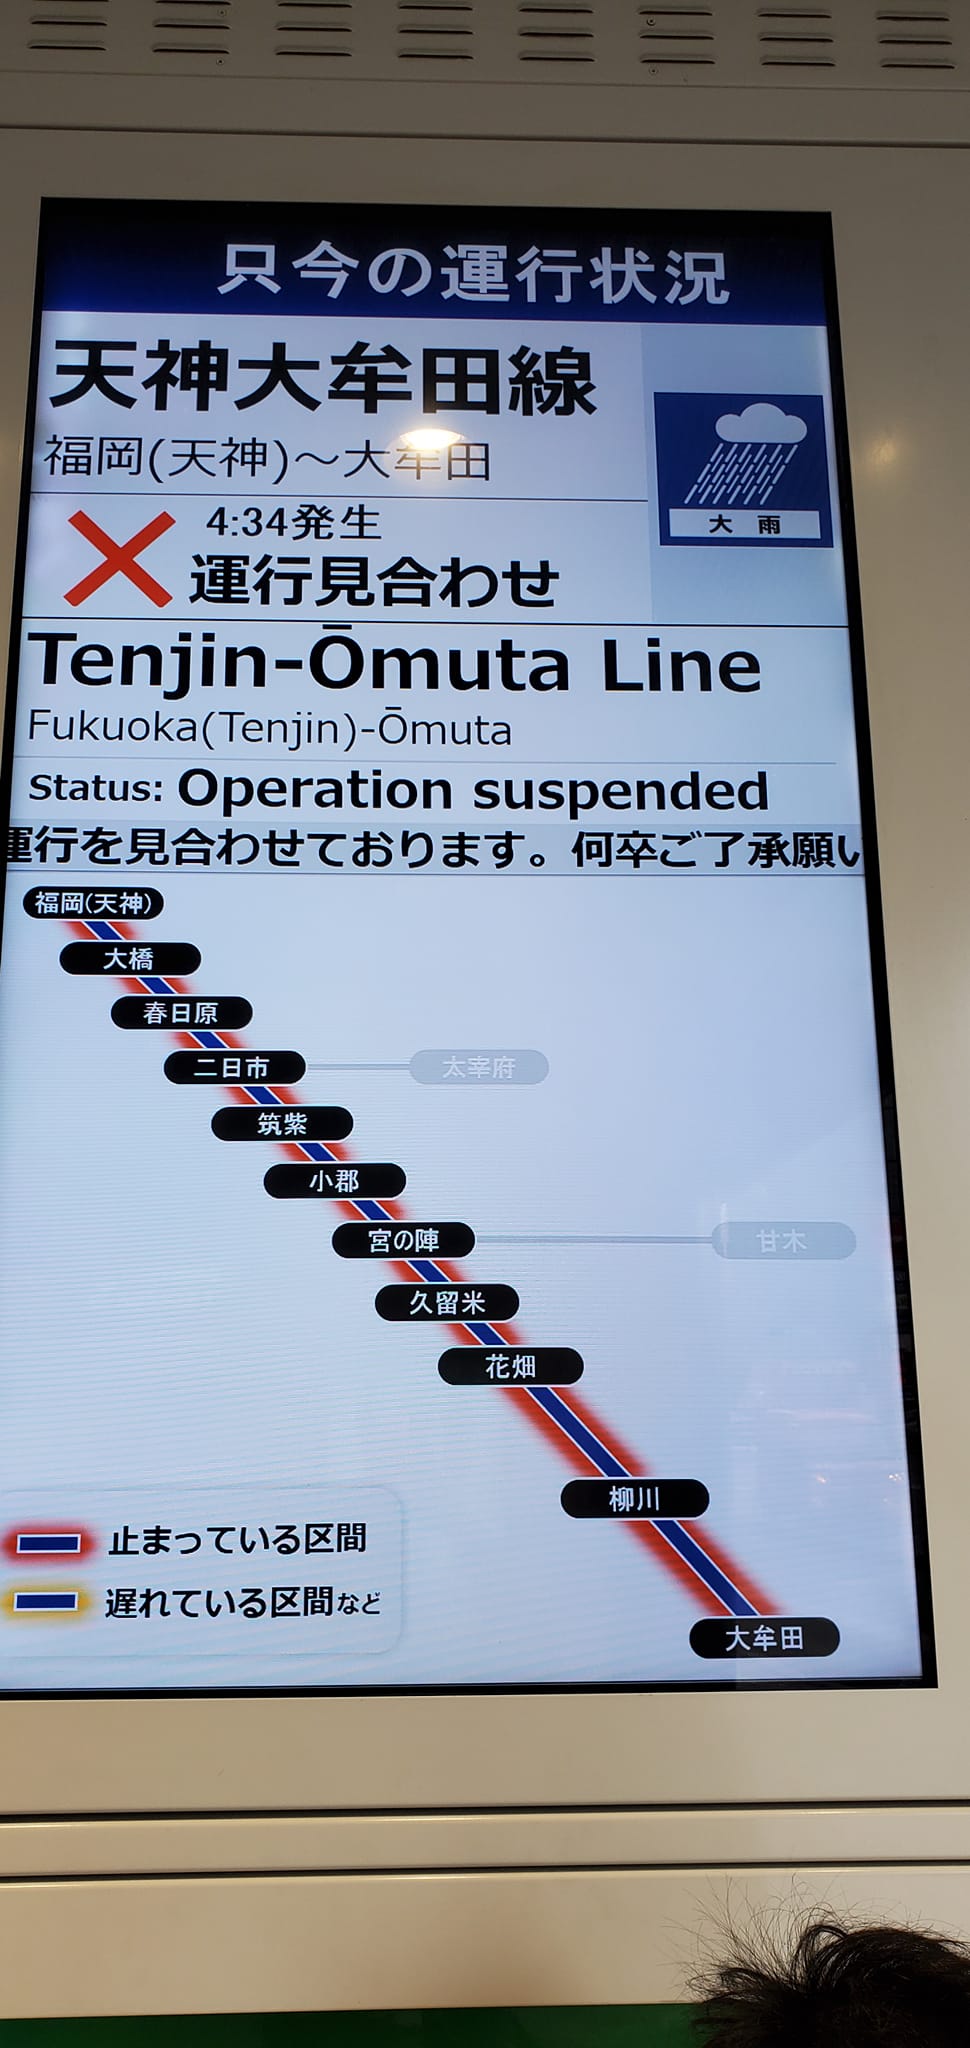 當地大部份列車服務亦受影響需要停駛。網上圖片